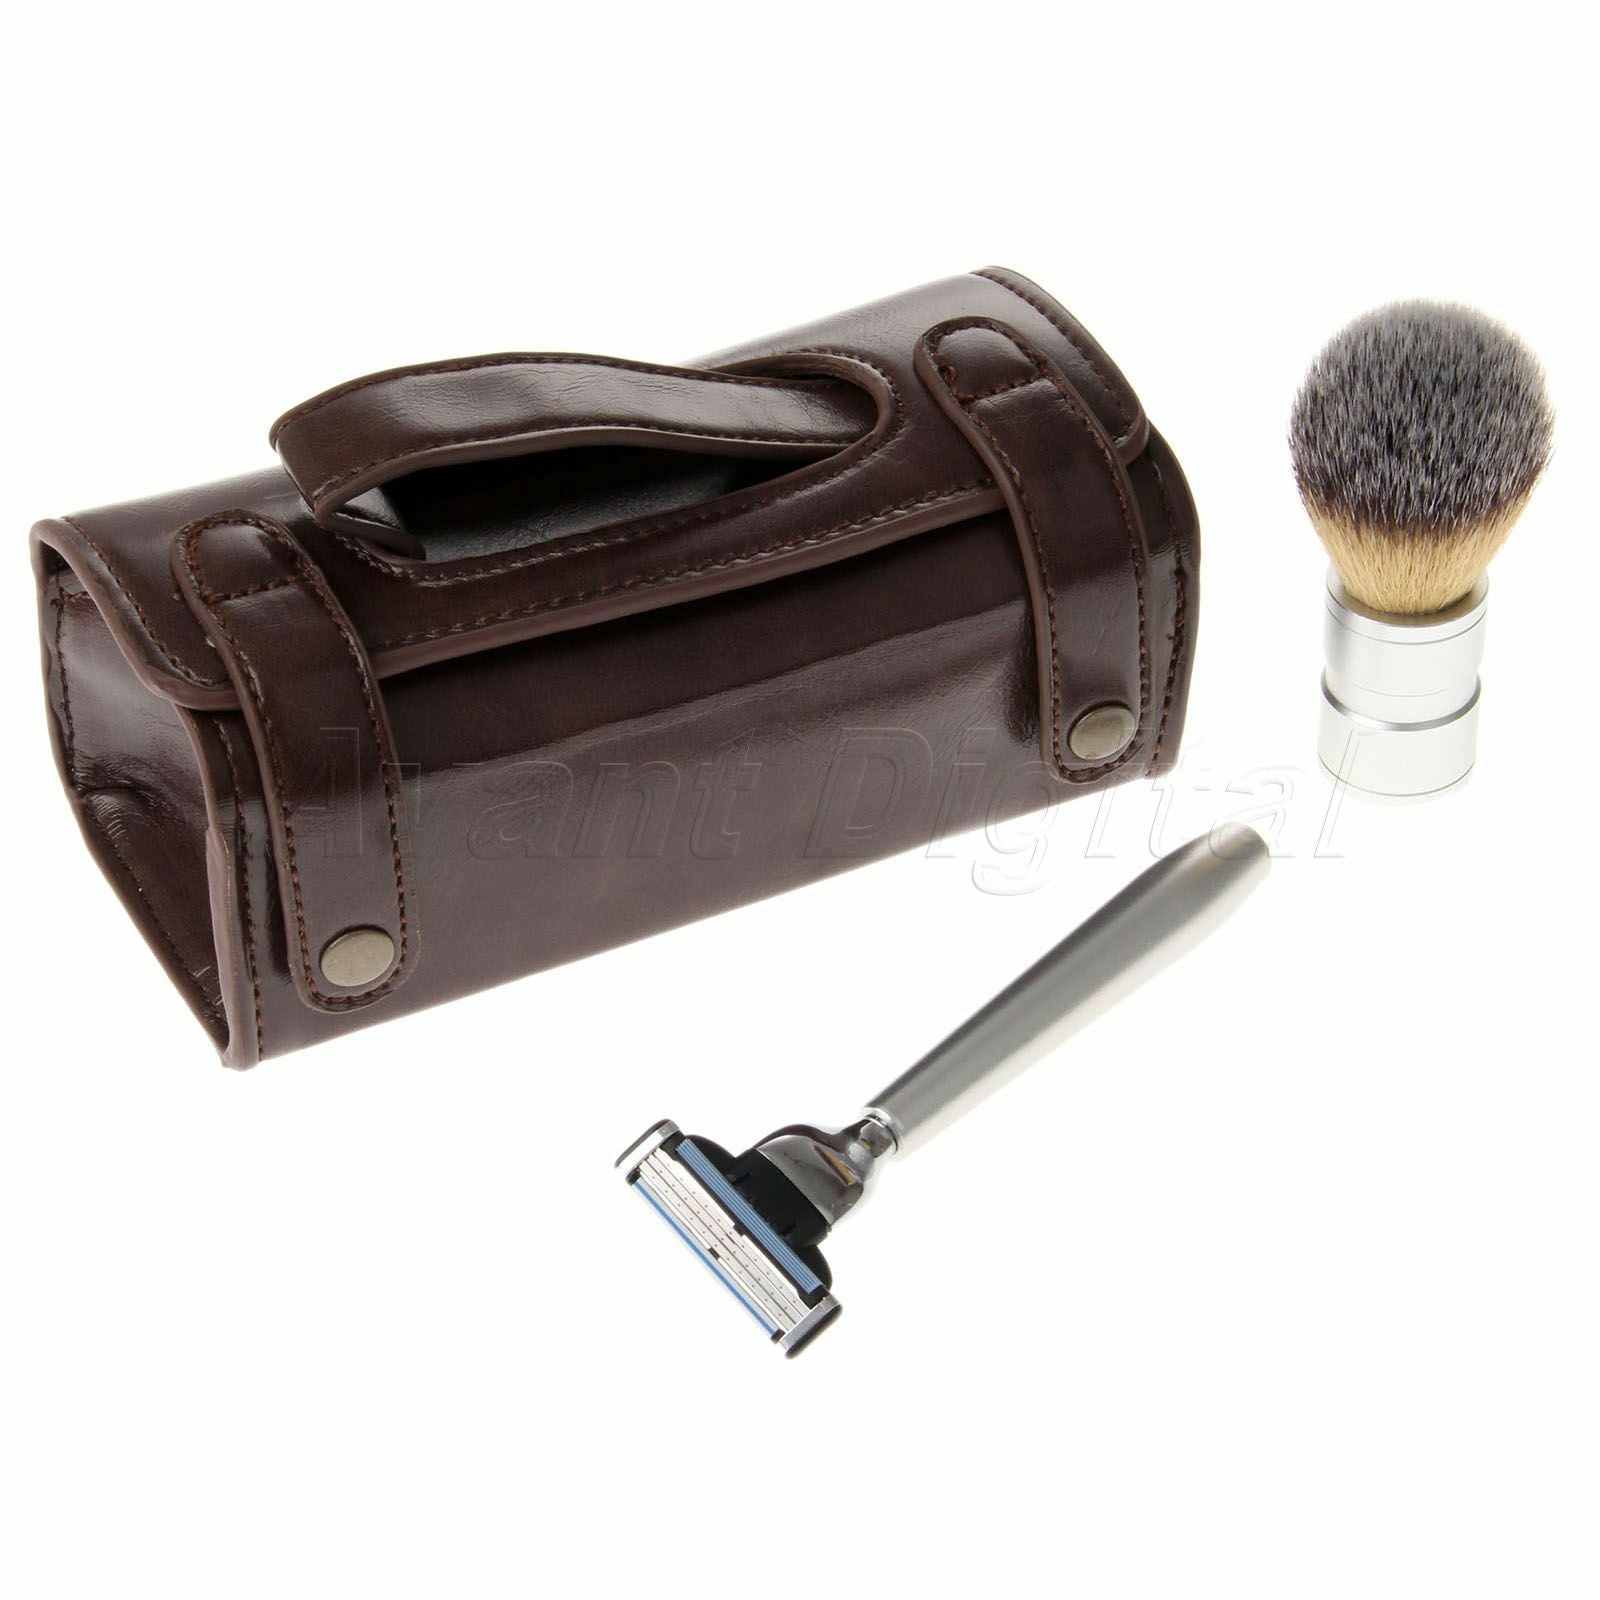 3 in 1 Men's Shaving Razor & Badger Hair Brush + PU Leather Case Bag Travel Use